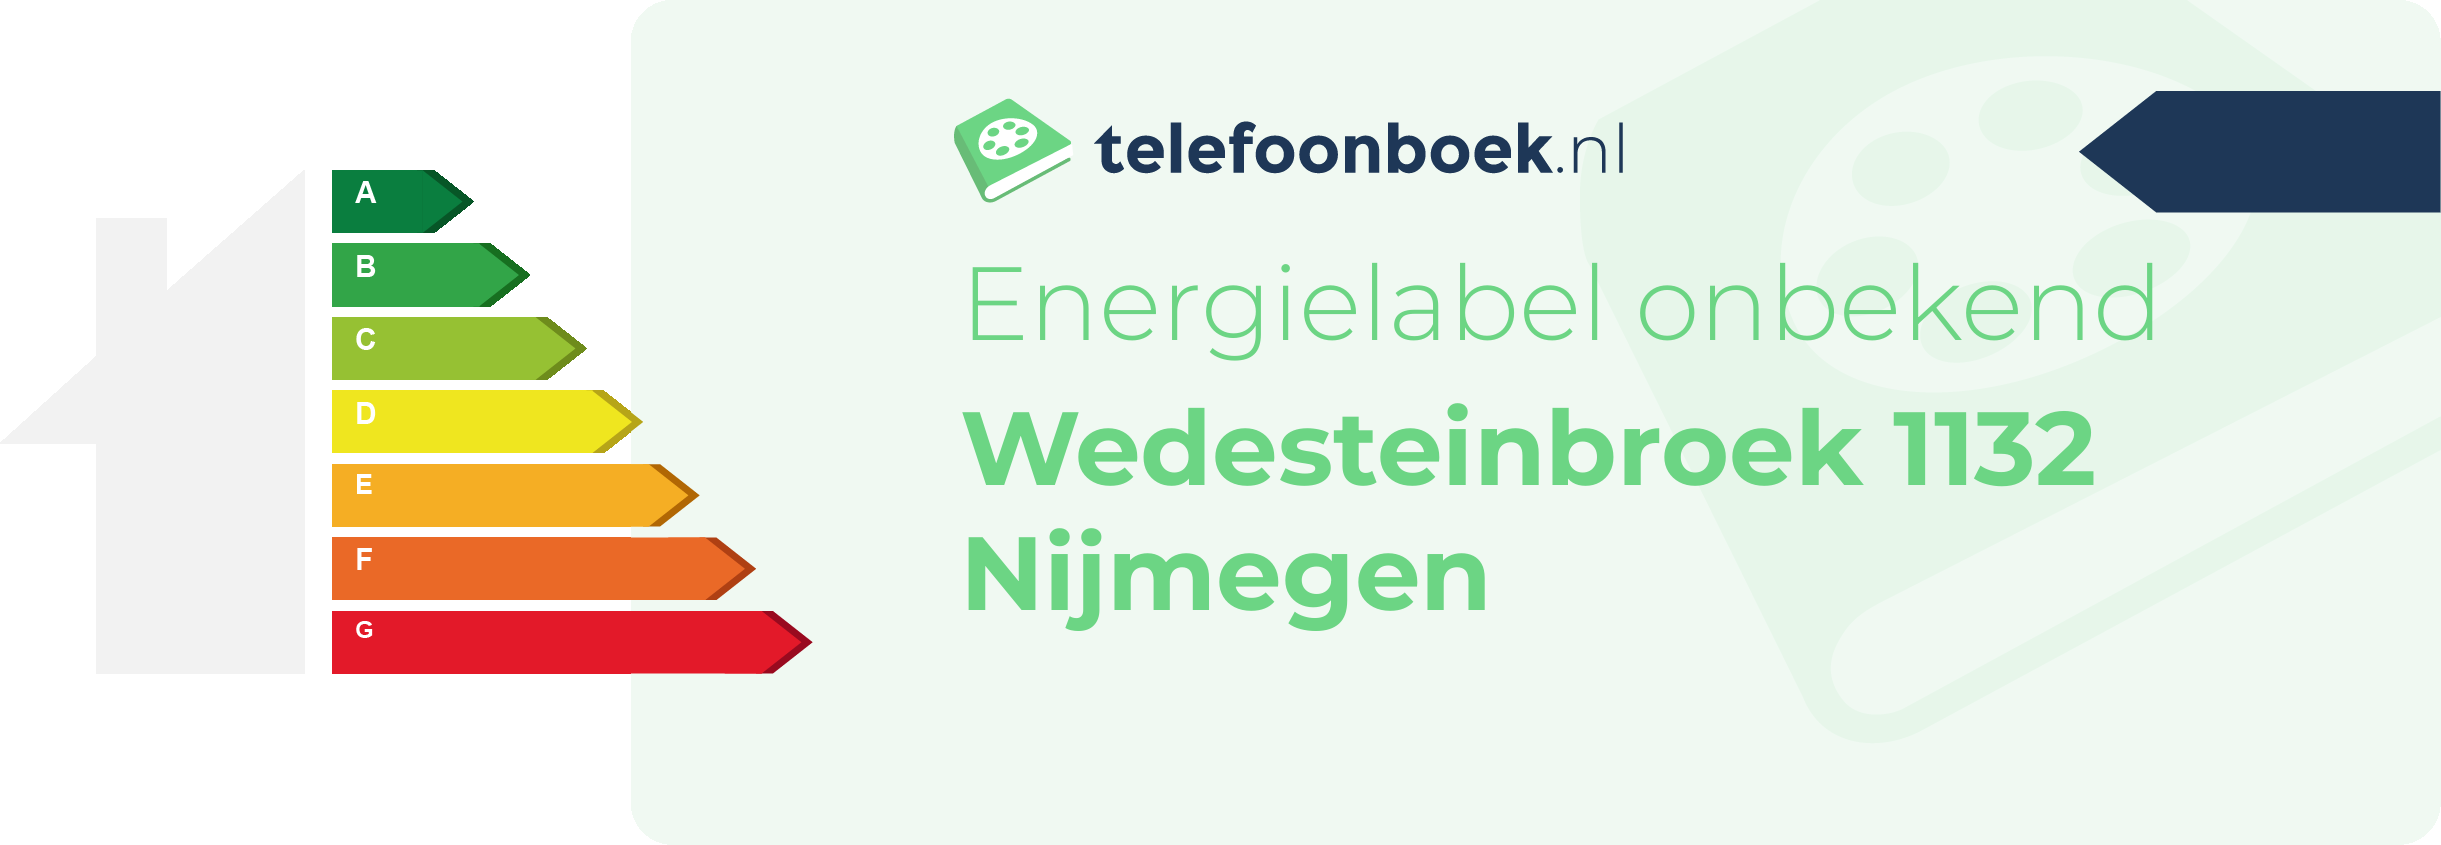 Energielabel Wedesteinbroek 1132 Nijmegen